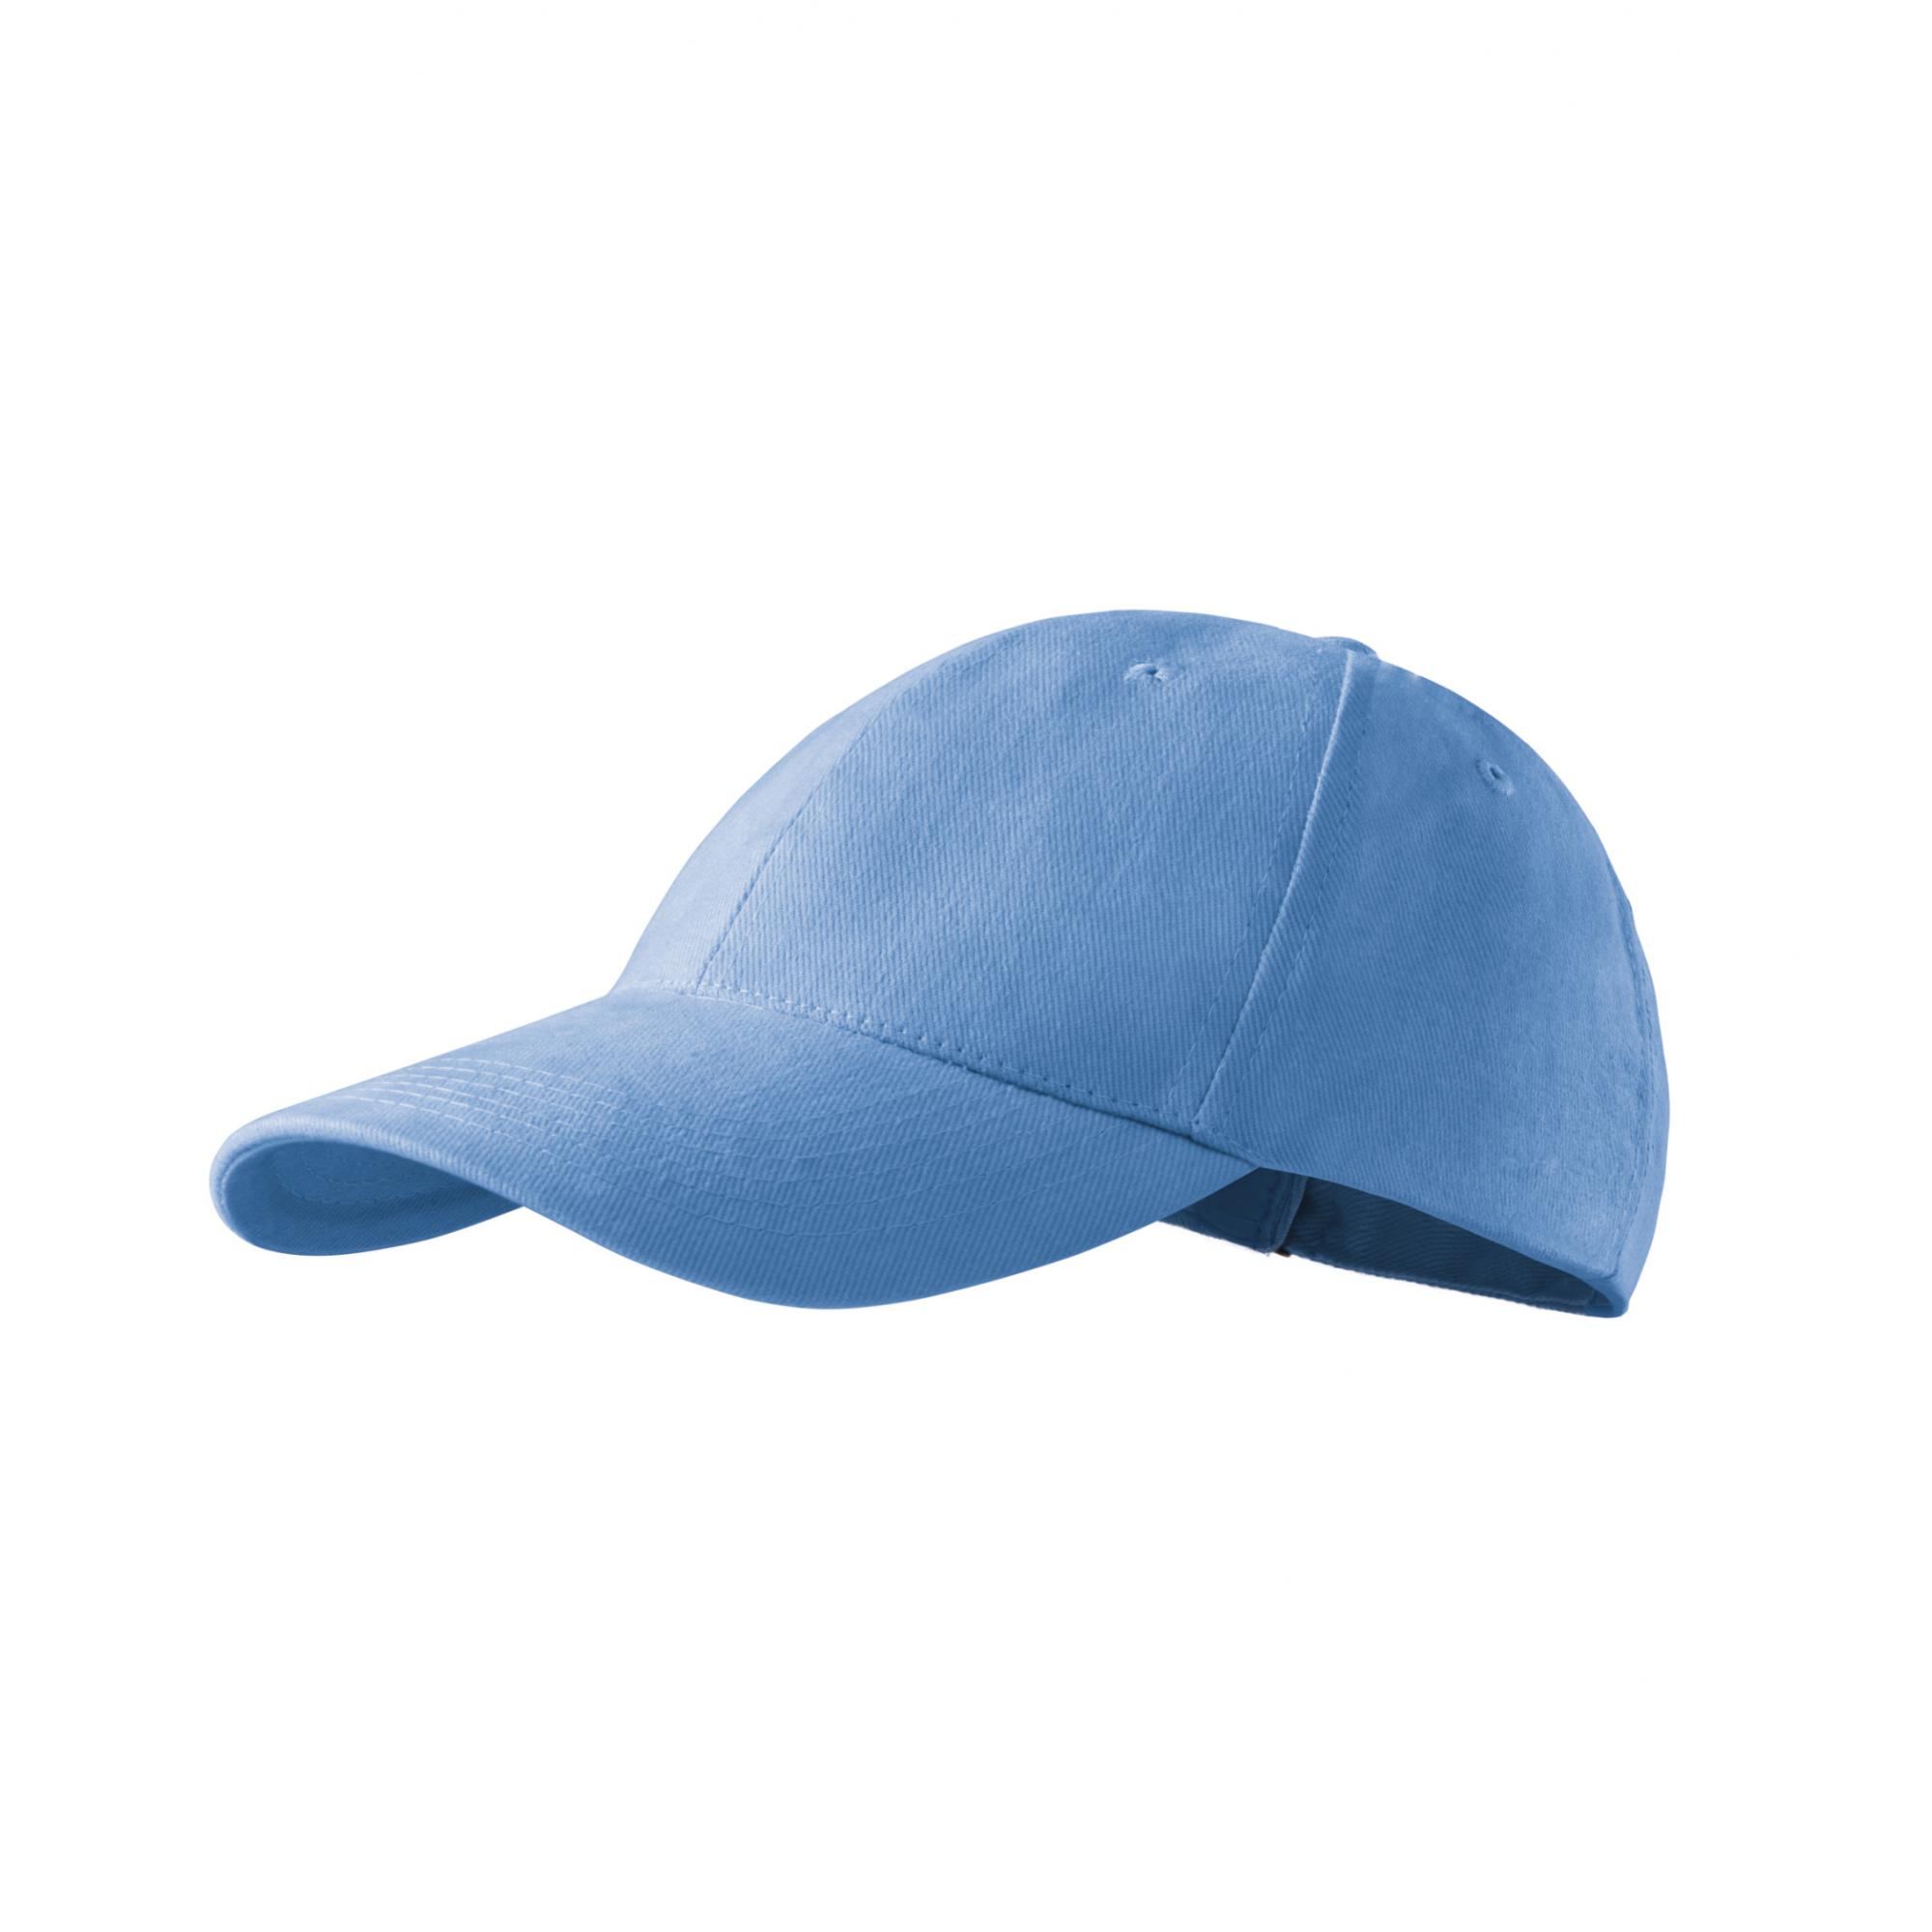 Şapcă unisex 6P 305 Albastru deschis Marime universala